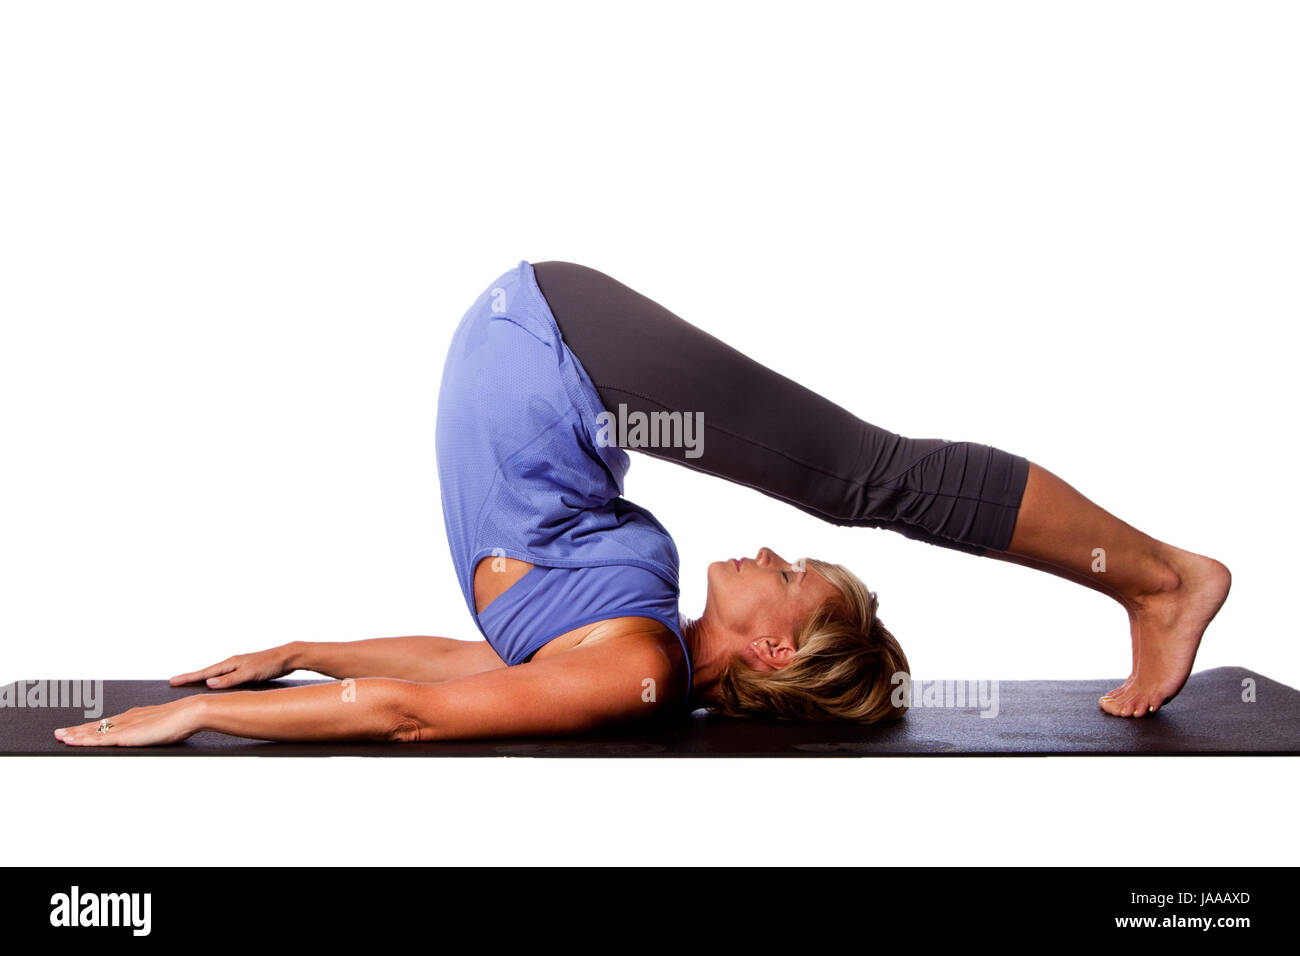 Zurück Strecken Sie Pflug Halasana Yoga-Pose von schönen gesunden Frau mit Beine über den Kopf, auf weiß. Stockfoto